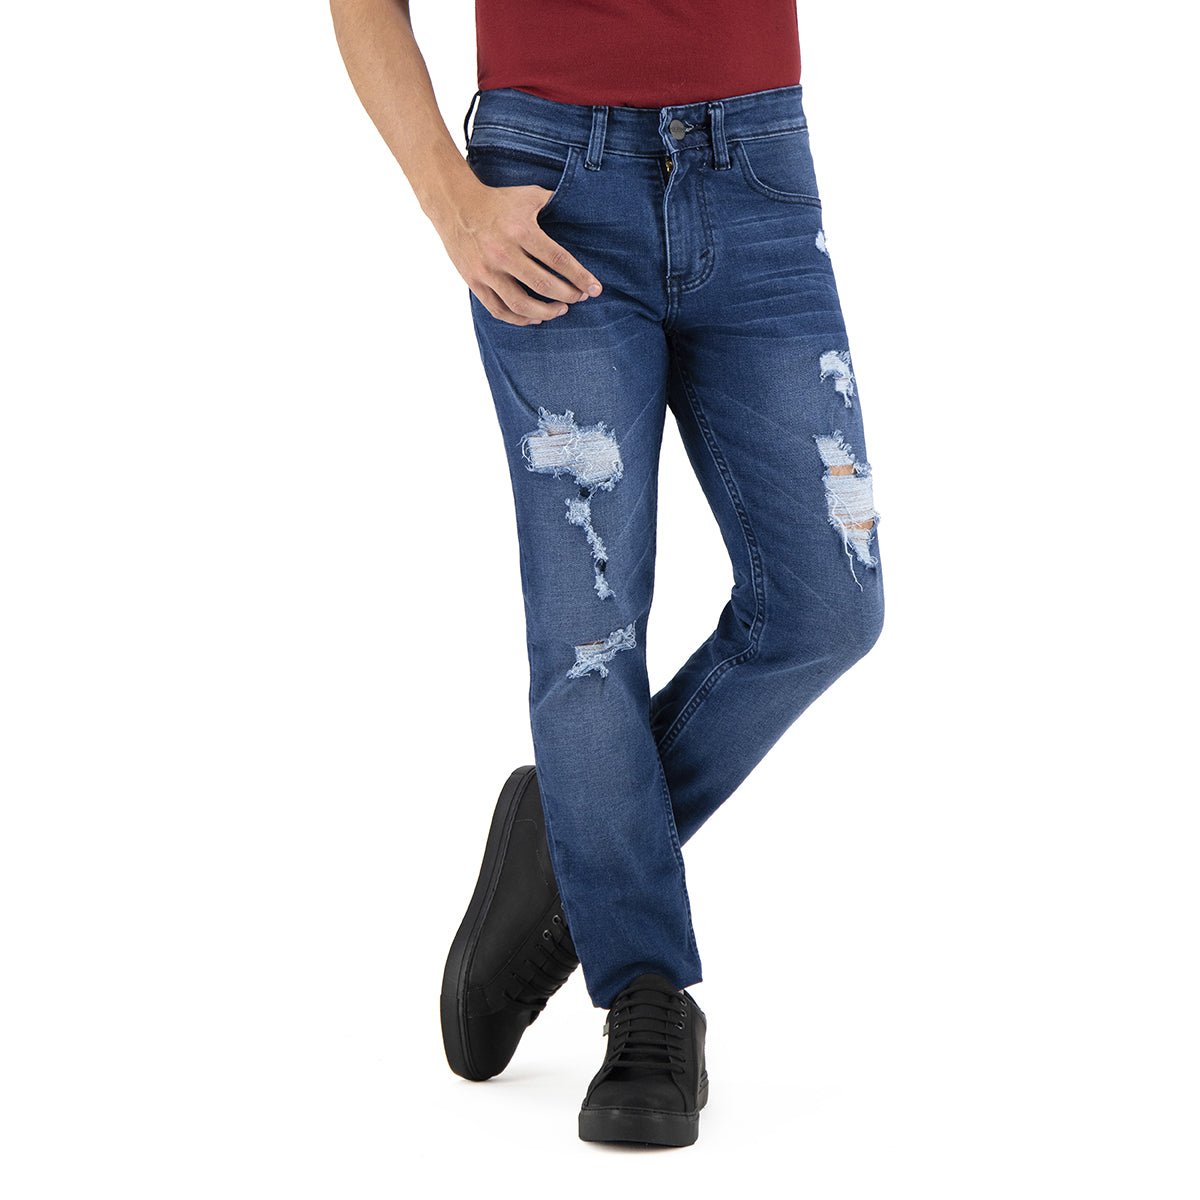 Jeans de Mezclilla Premium Slim Fit - Estambul